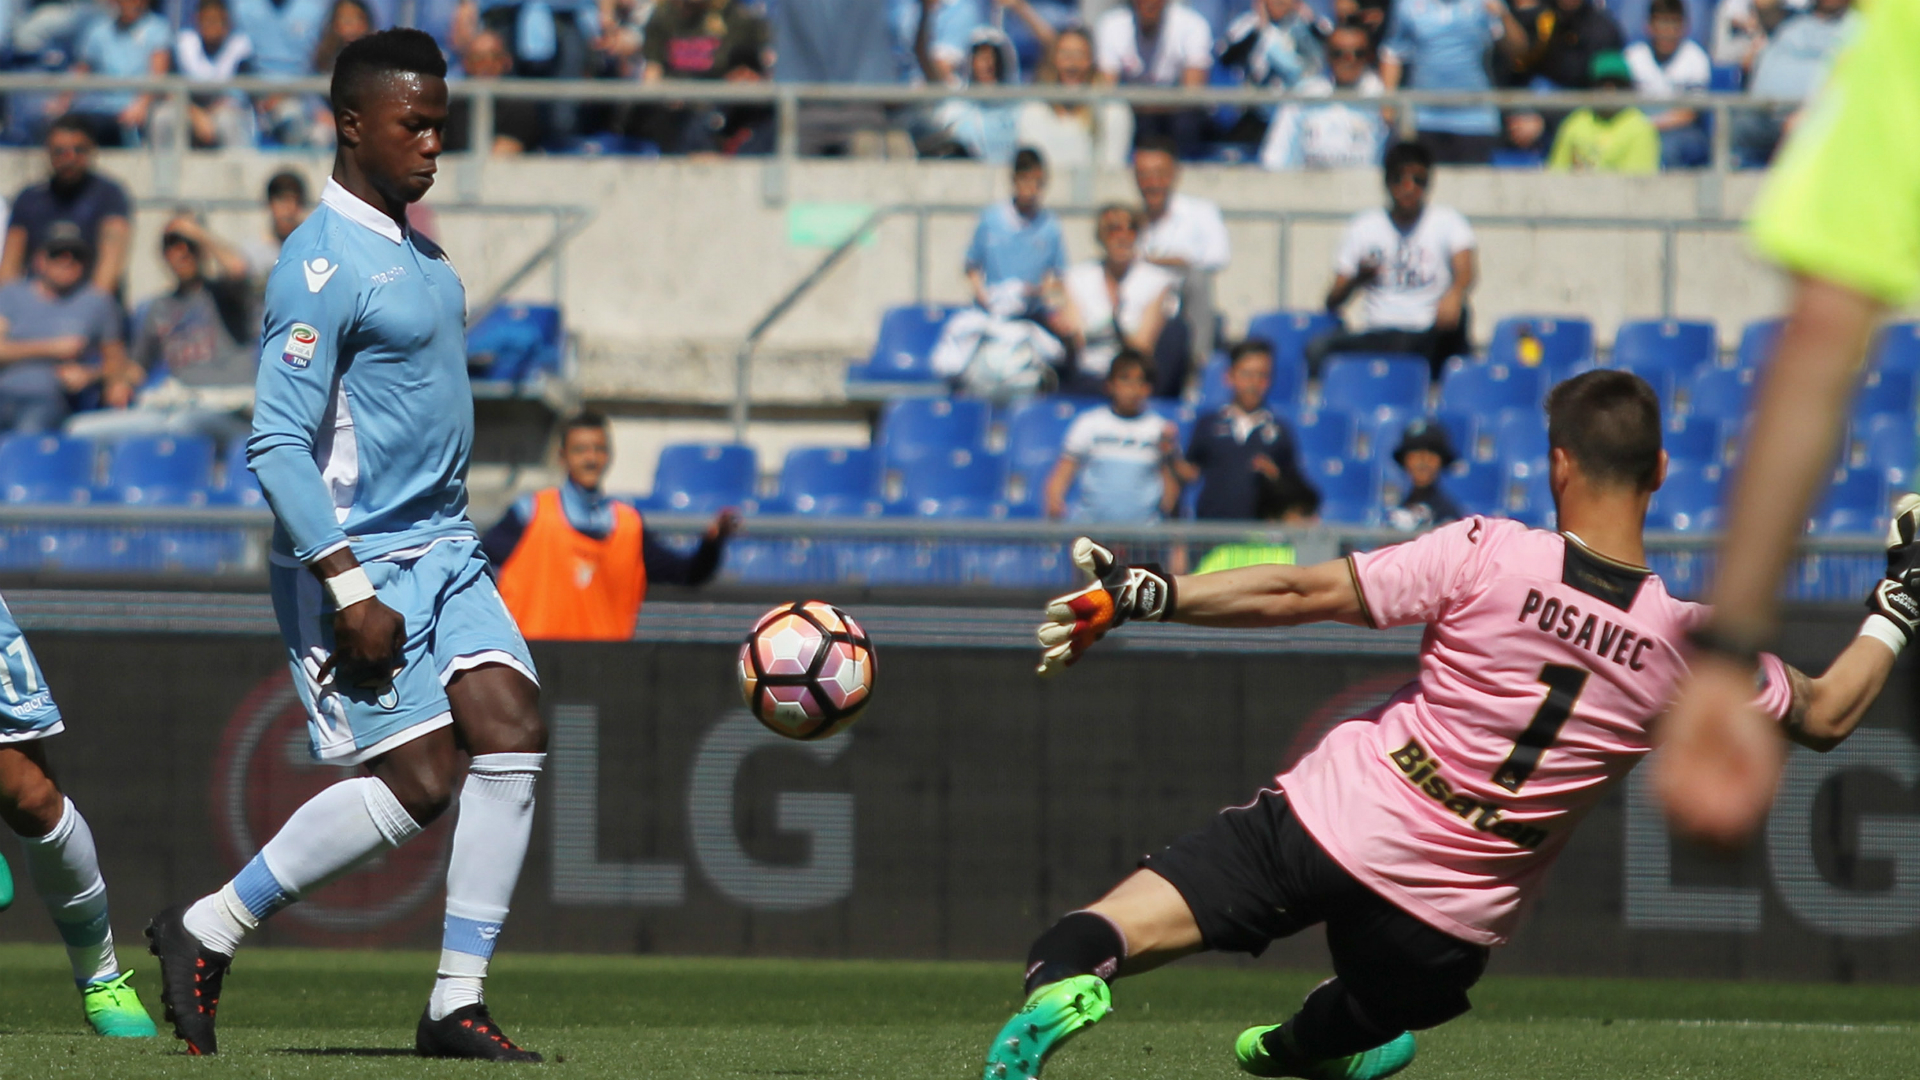 Lazio 6 Palermo 2: Keita nets five-minute hat-trick